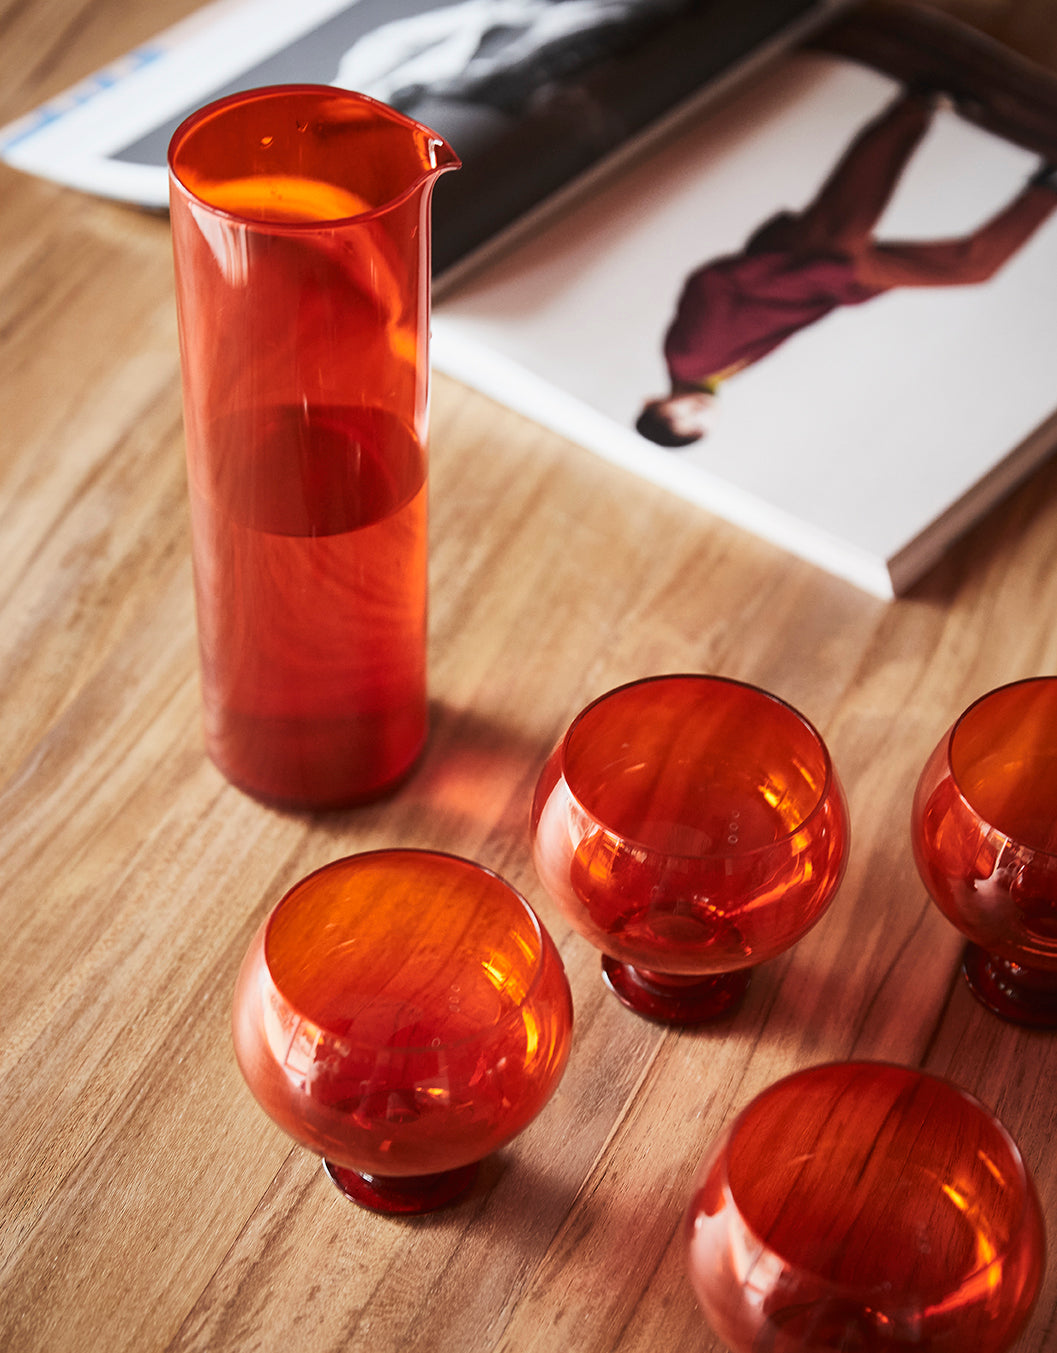 Funky orange glassware set Orange van HKliving te koop bij LEEF mode en accessoires Meppel